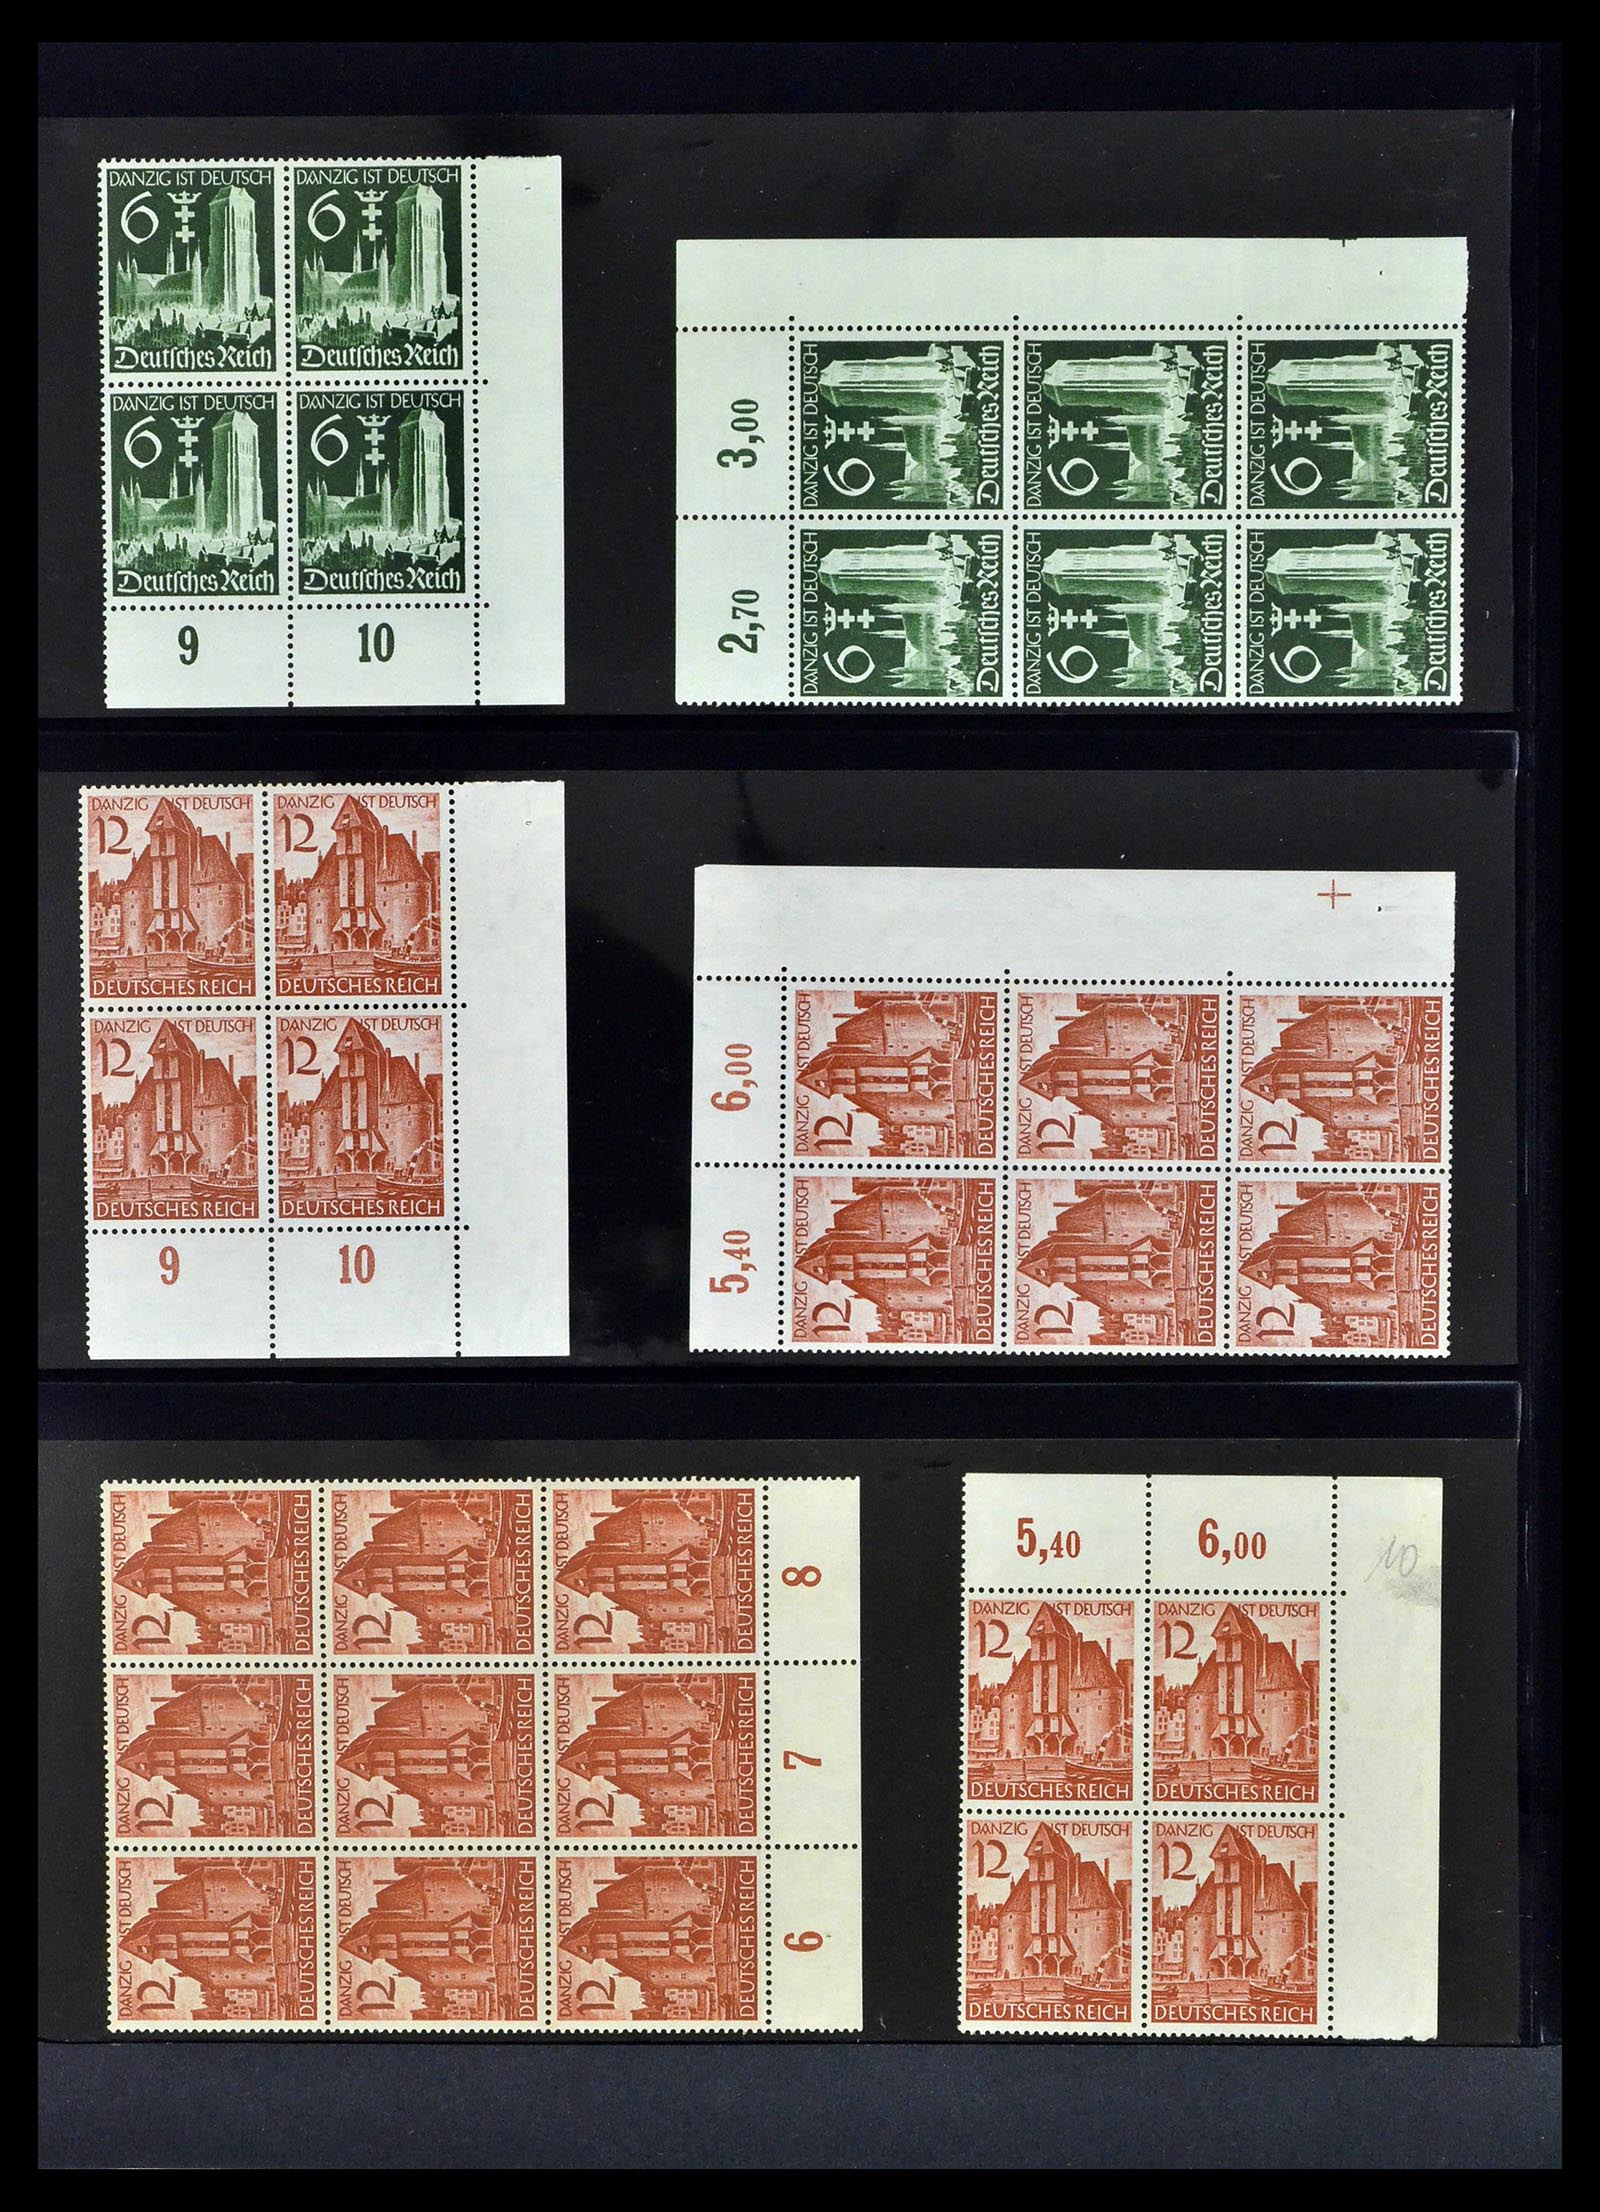 39255 0020 - Postzegelverzameling 39255 Duitse Rijk postfrisse blokken van 4.